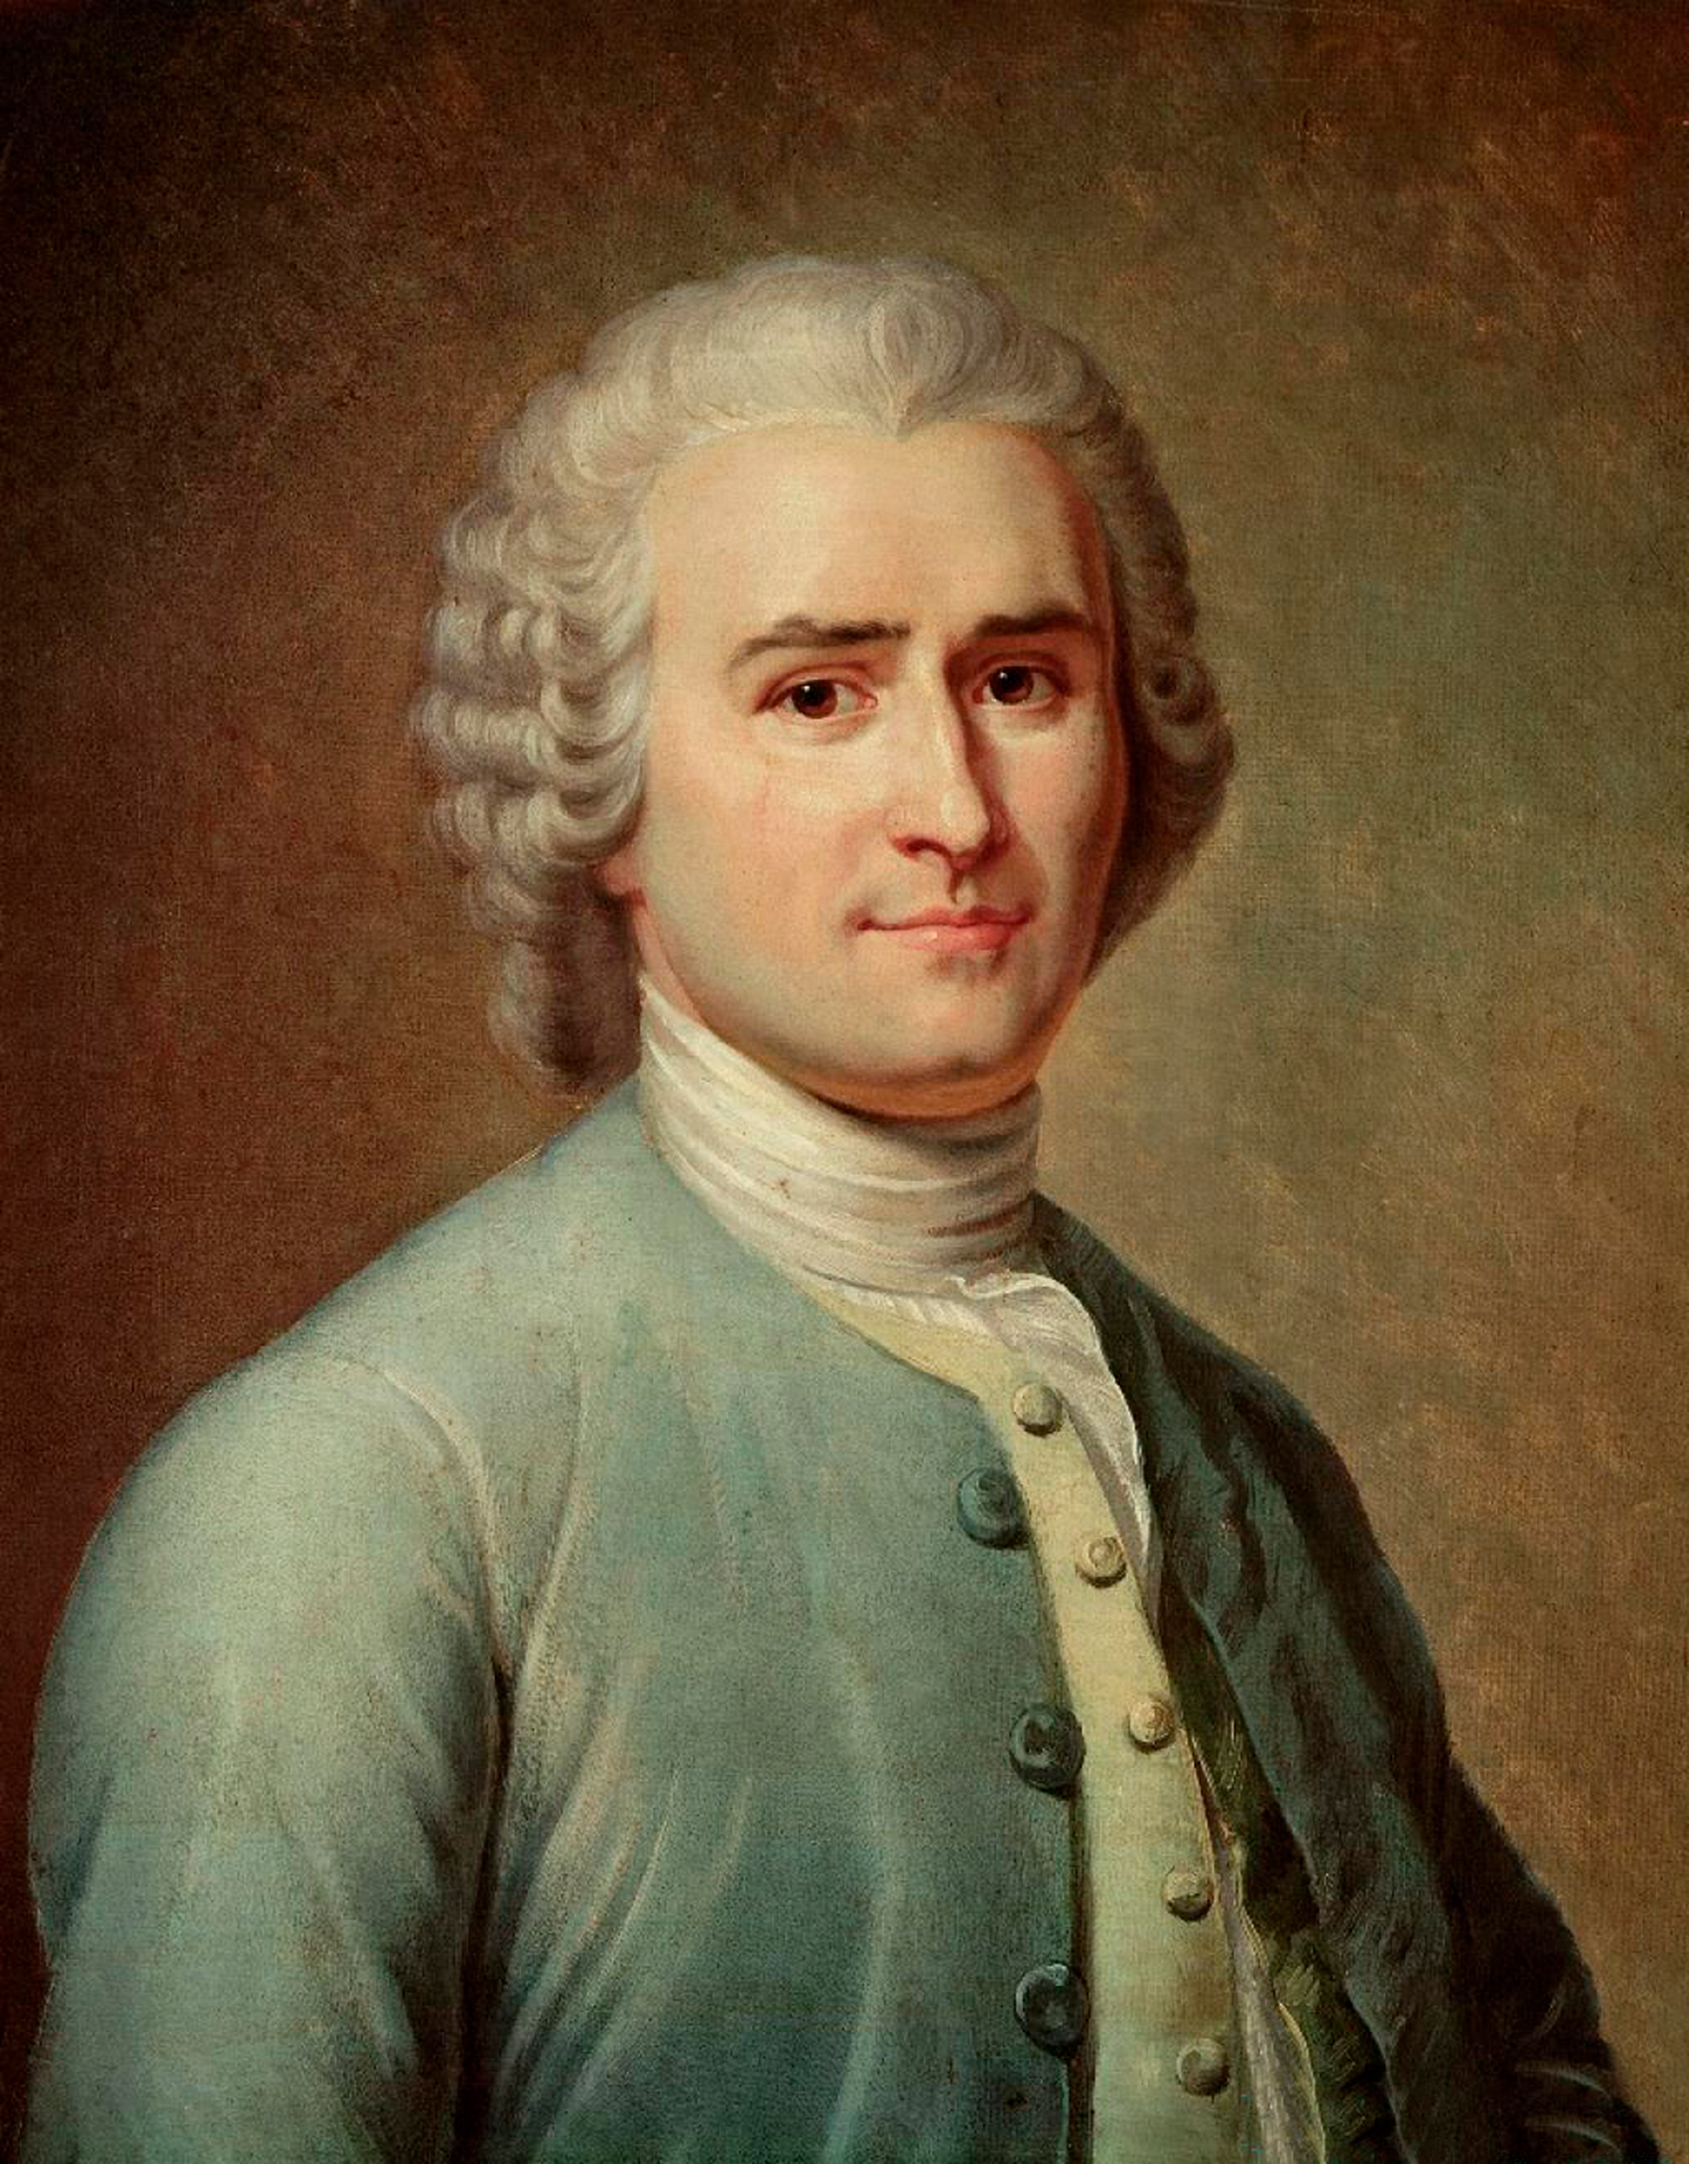 Figure 2: Jean Jacques Rousseau’s portrait. 